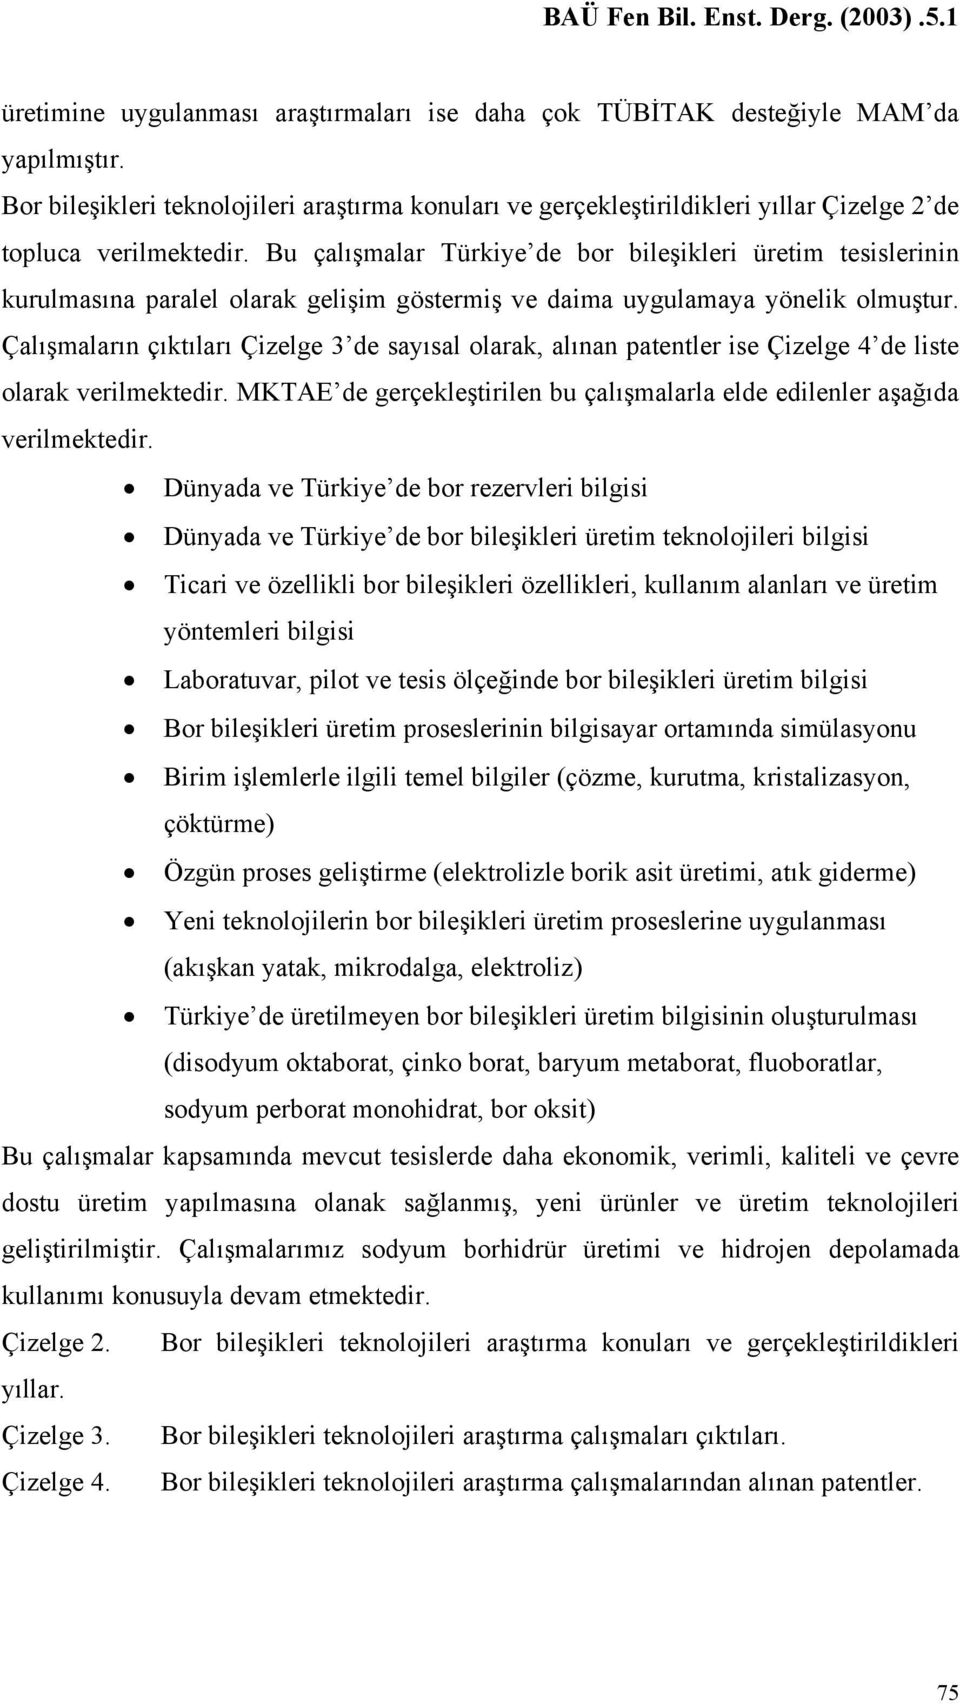 Bu çalışmalar Türkiye de bor bileşikleri üretim tesislerinin kurulmasına paralel olarak gelişim göstermiş ve daima uygulamaya yönelik olmuştur.